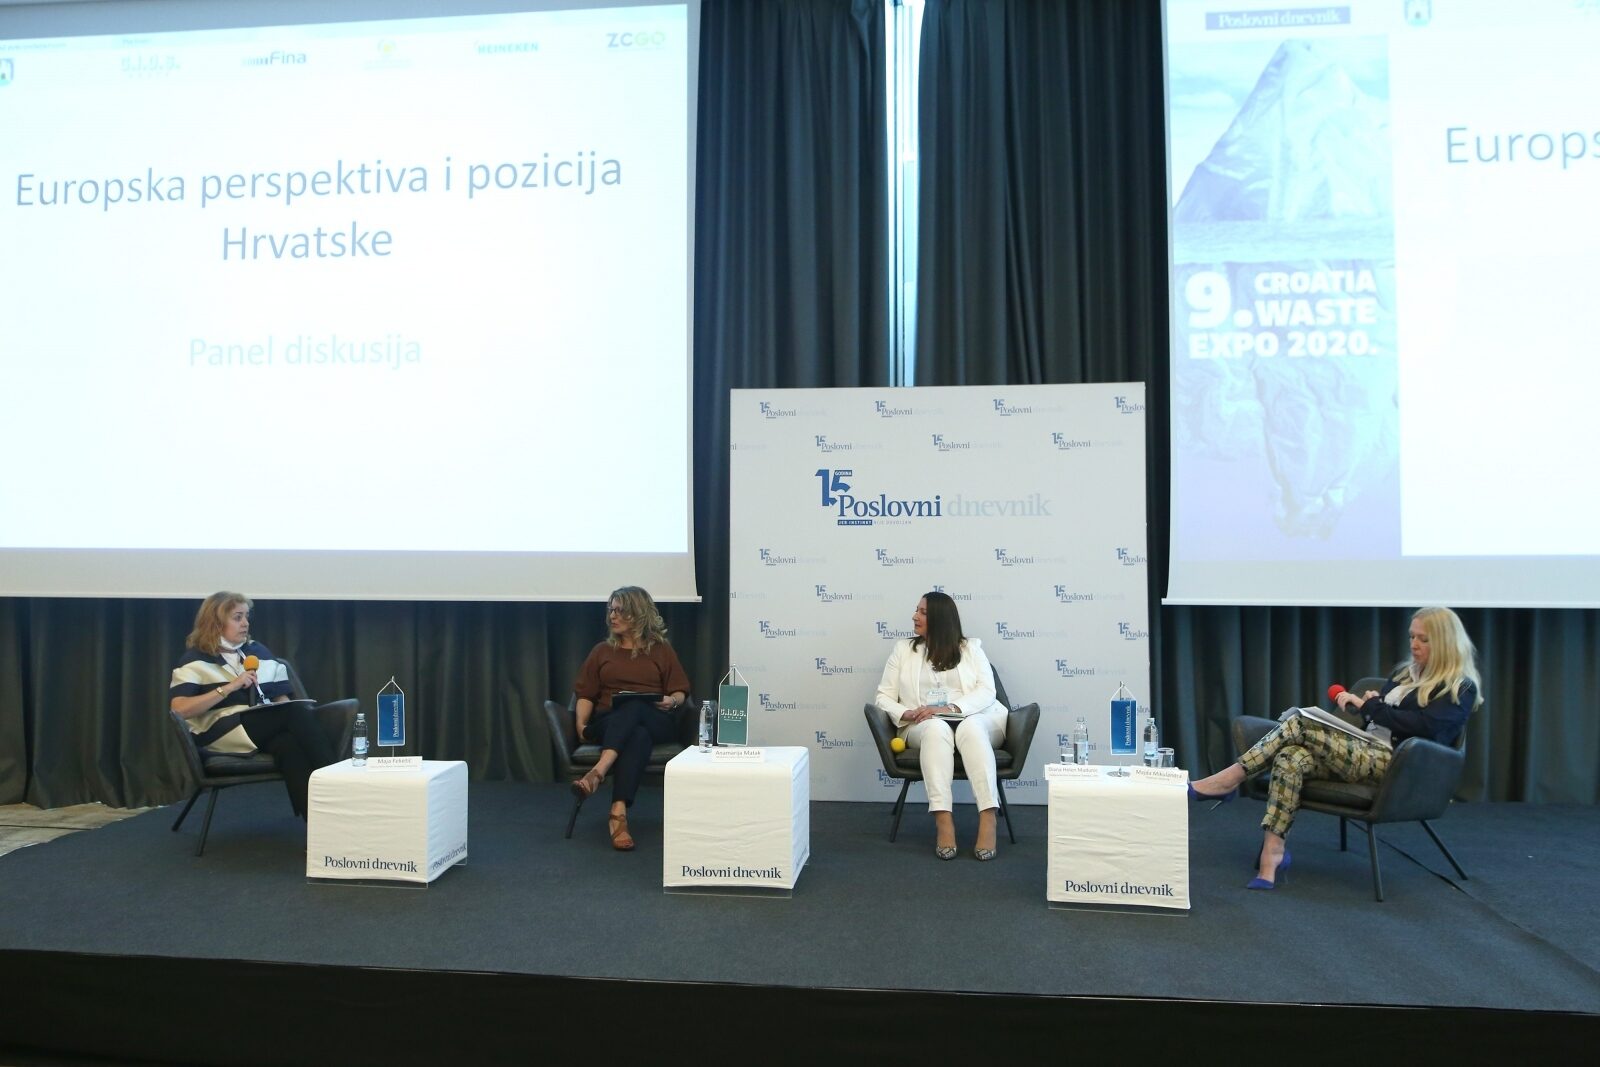 Zagreb: Croatia Waste Expo, panel Europska perspektiva i pozicija Hrvatske